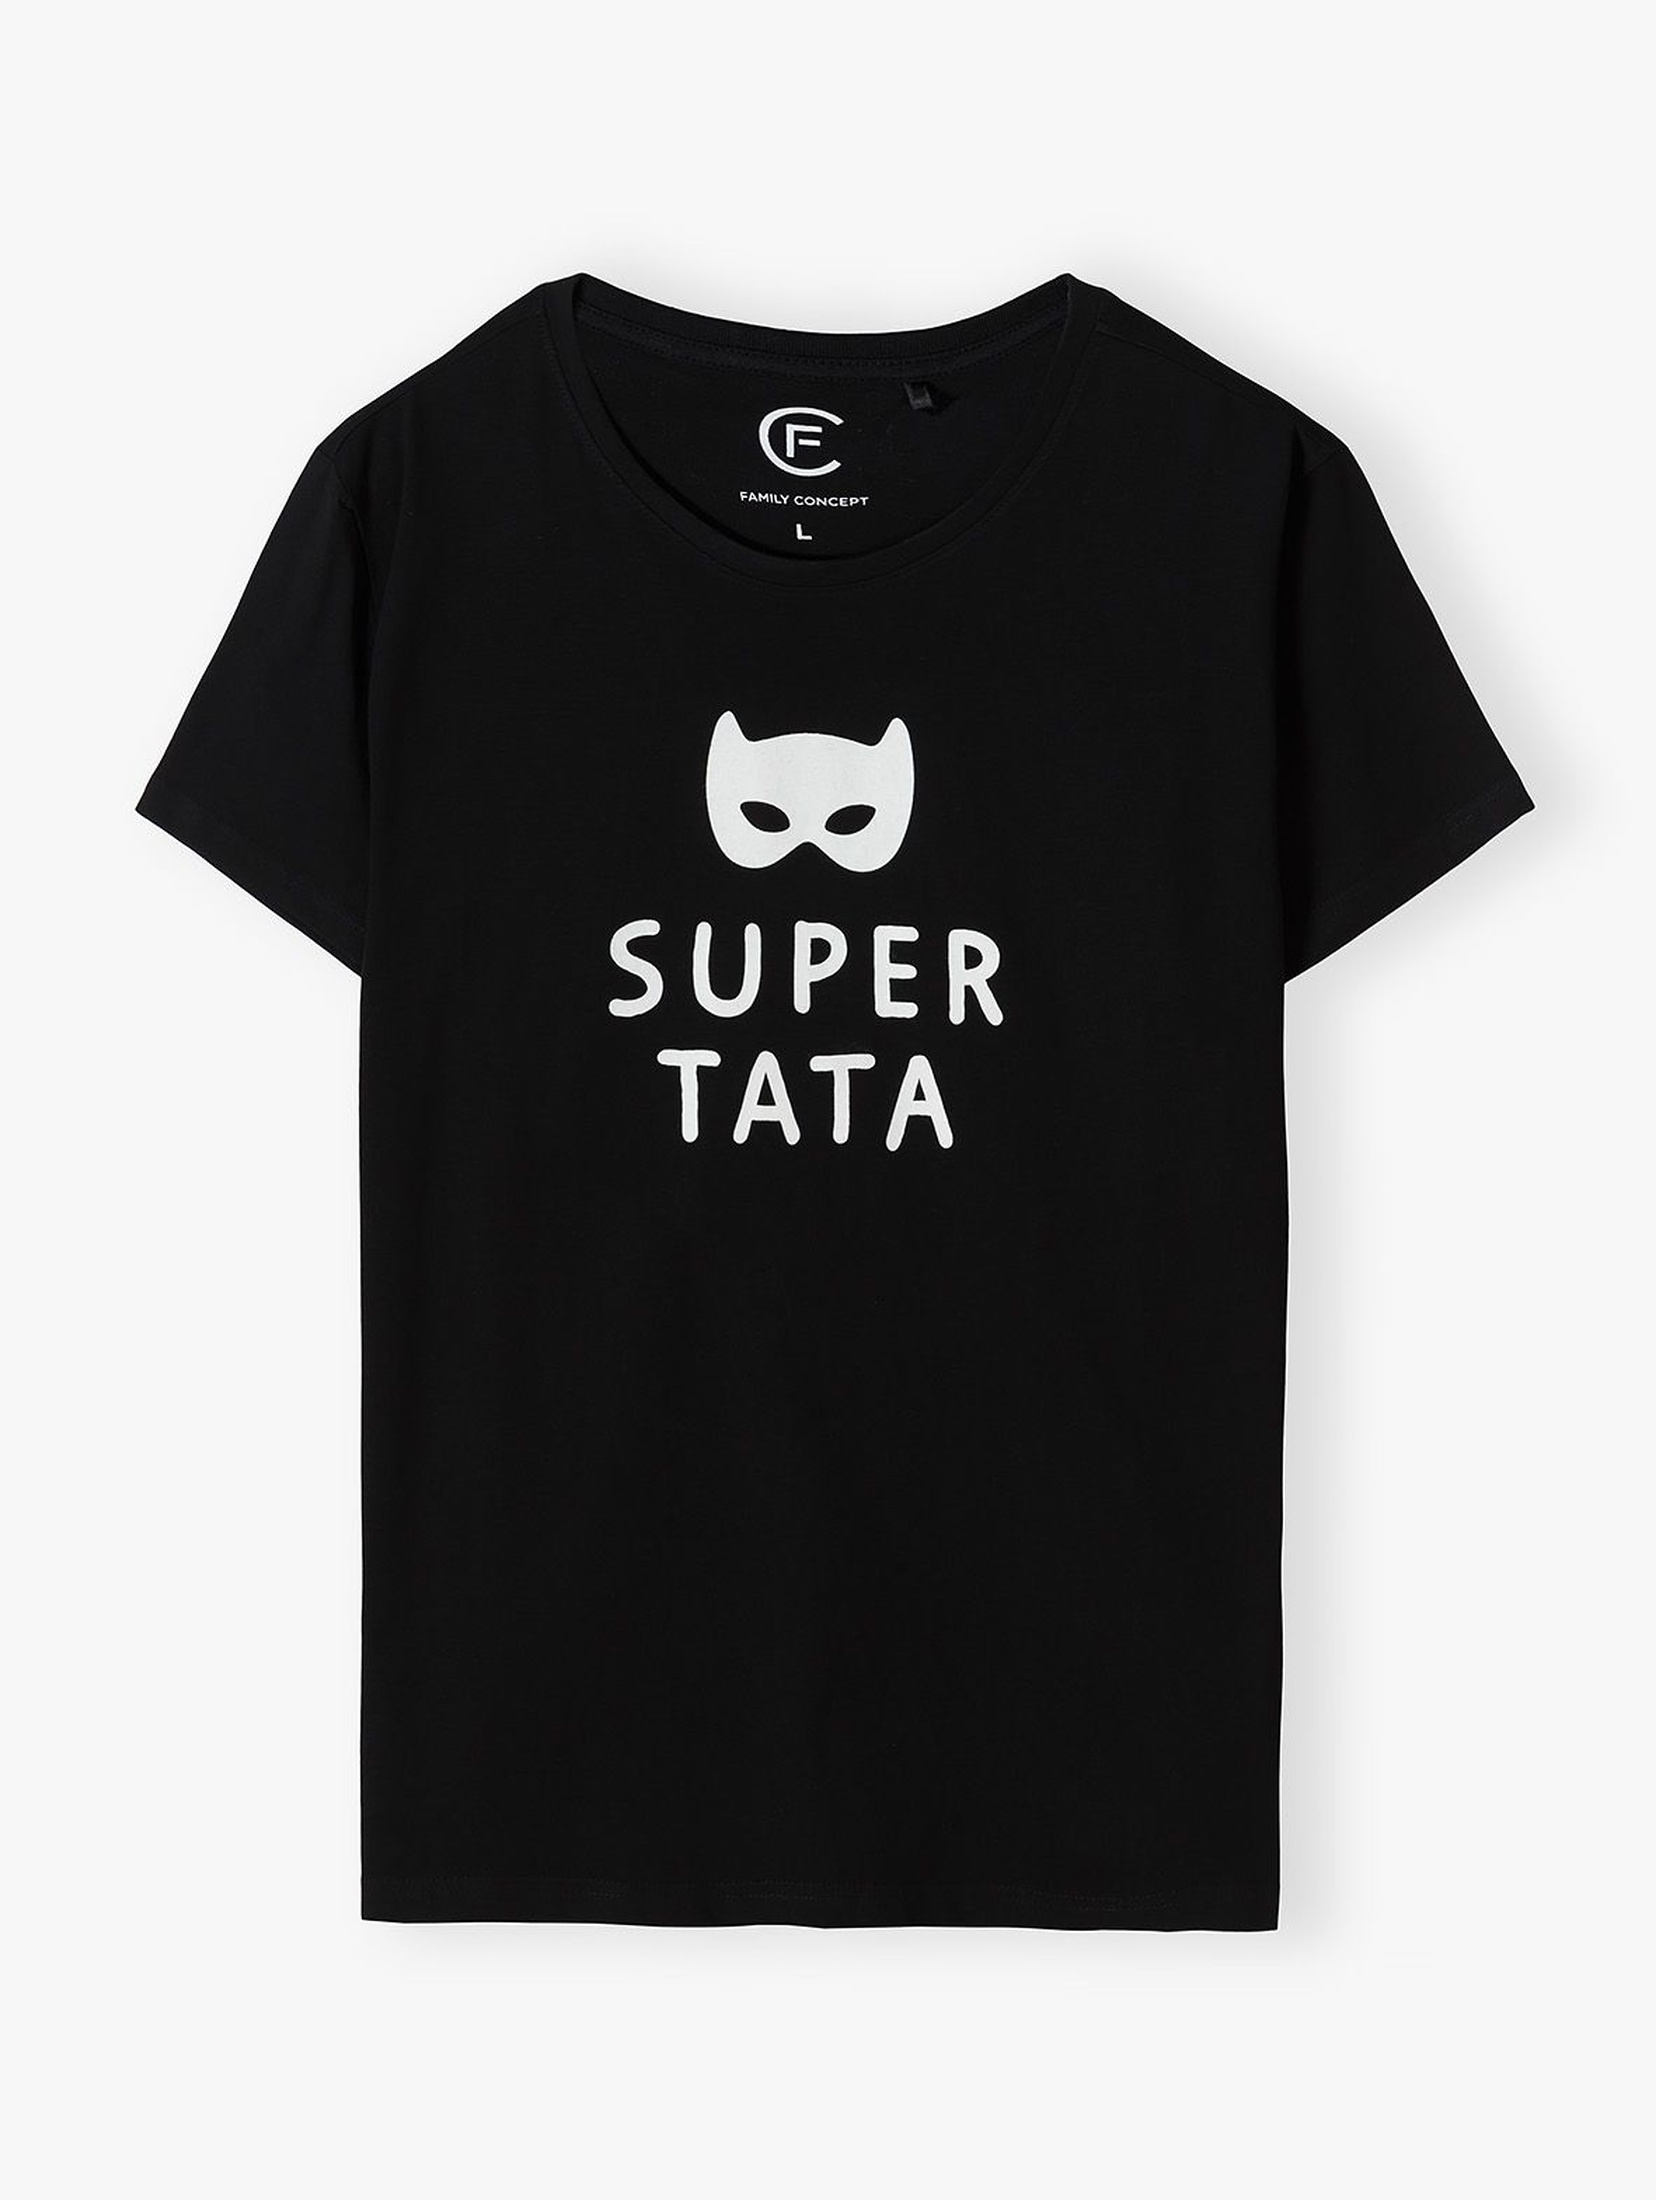 Bawełniany t-shirt męski z nadrukiem "Super tata"